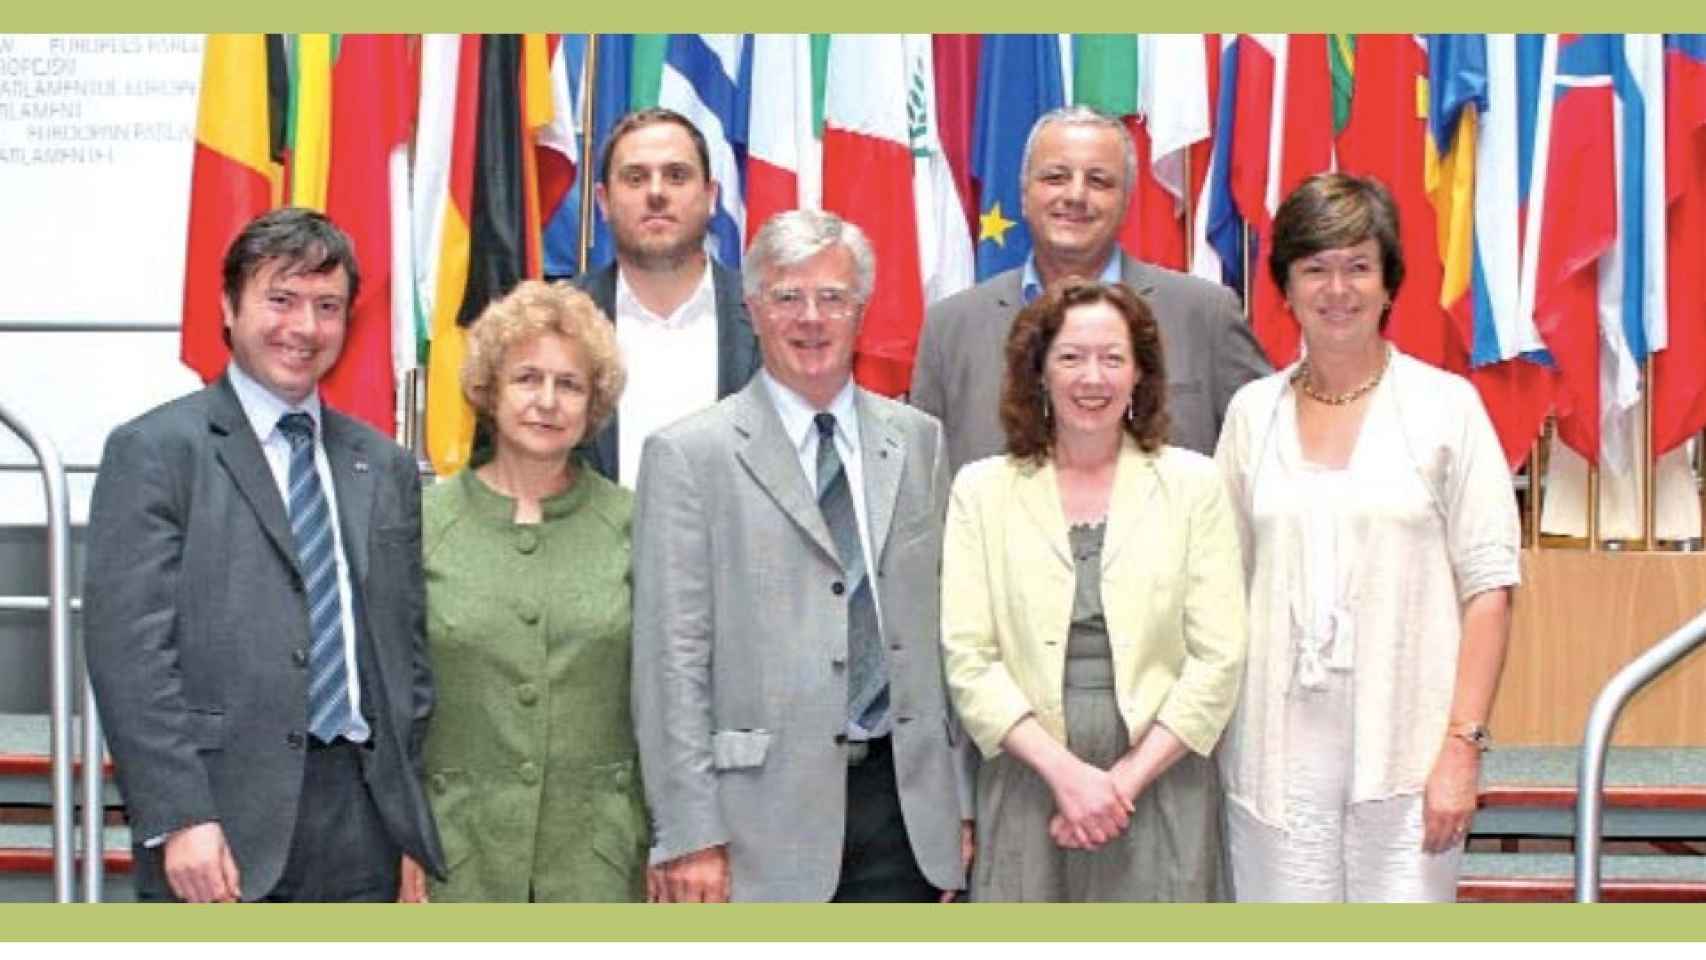 Oriol Junqueras (arriba a la izquierda) posa como diputado europeo con el resto del grupo Los Verdes en 2009. En la fila de debajo, justo delante de él, la supuesta espía rusa Zdanoka.